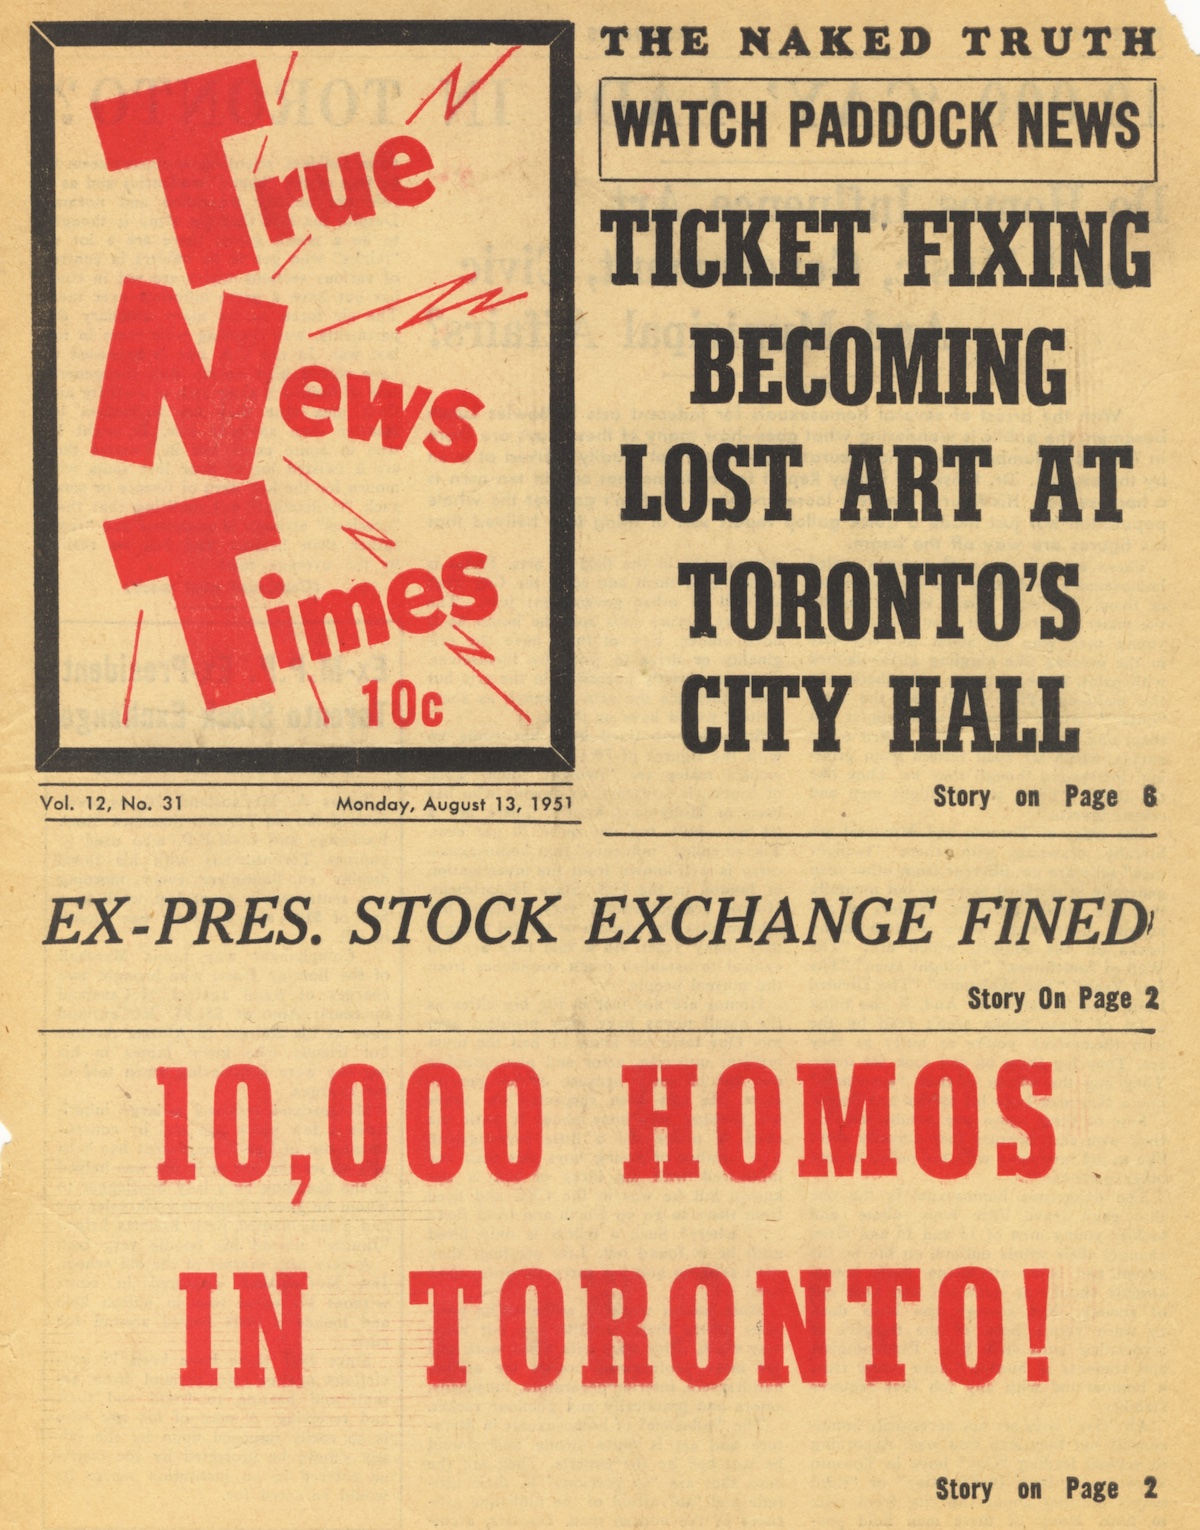 True News Times, August 13, 1951